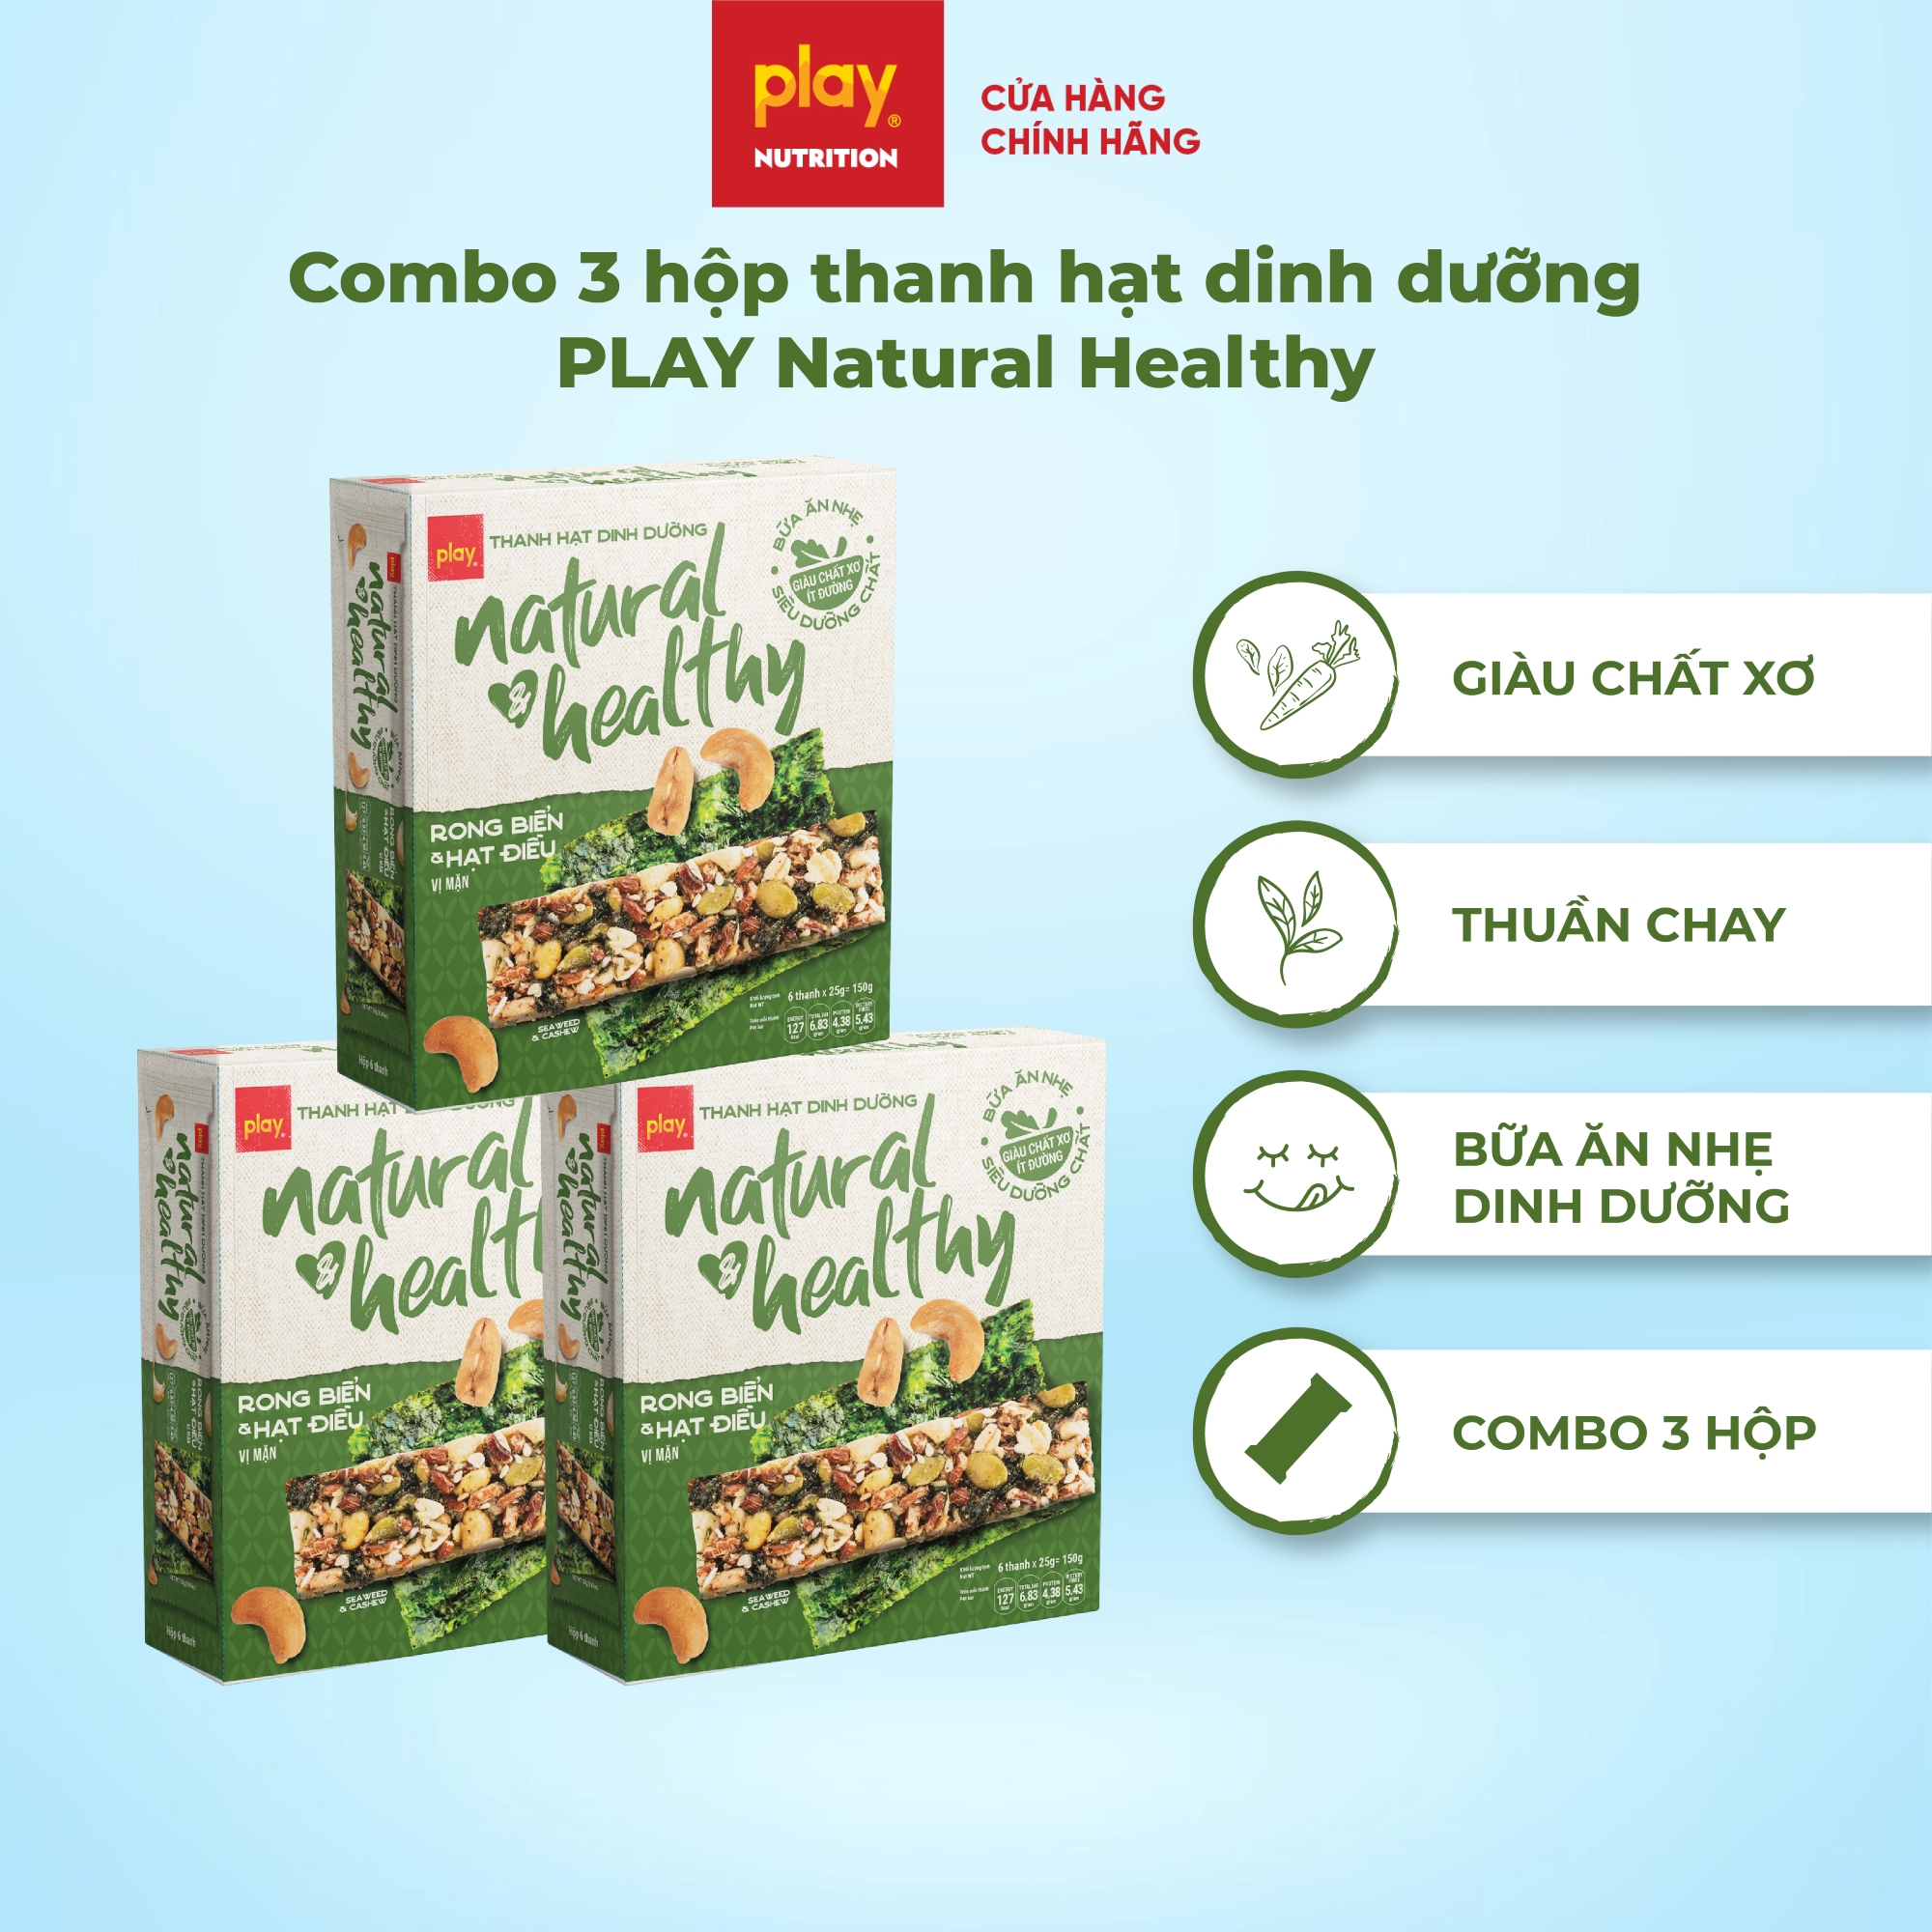 Combo 3 hộp thanh hạt dinh dưỡng PLAY Natural & Healthy - Bánh hạt dinh dưỡng, bánh ăn kiêng giảm cân